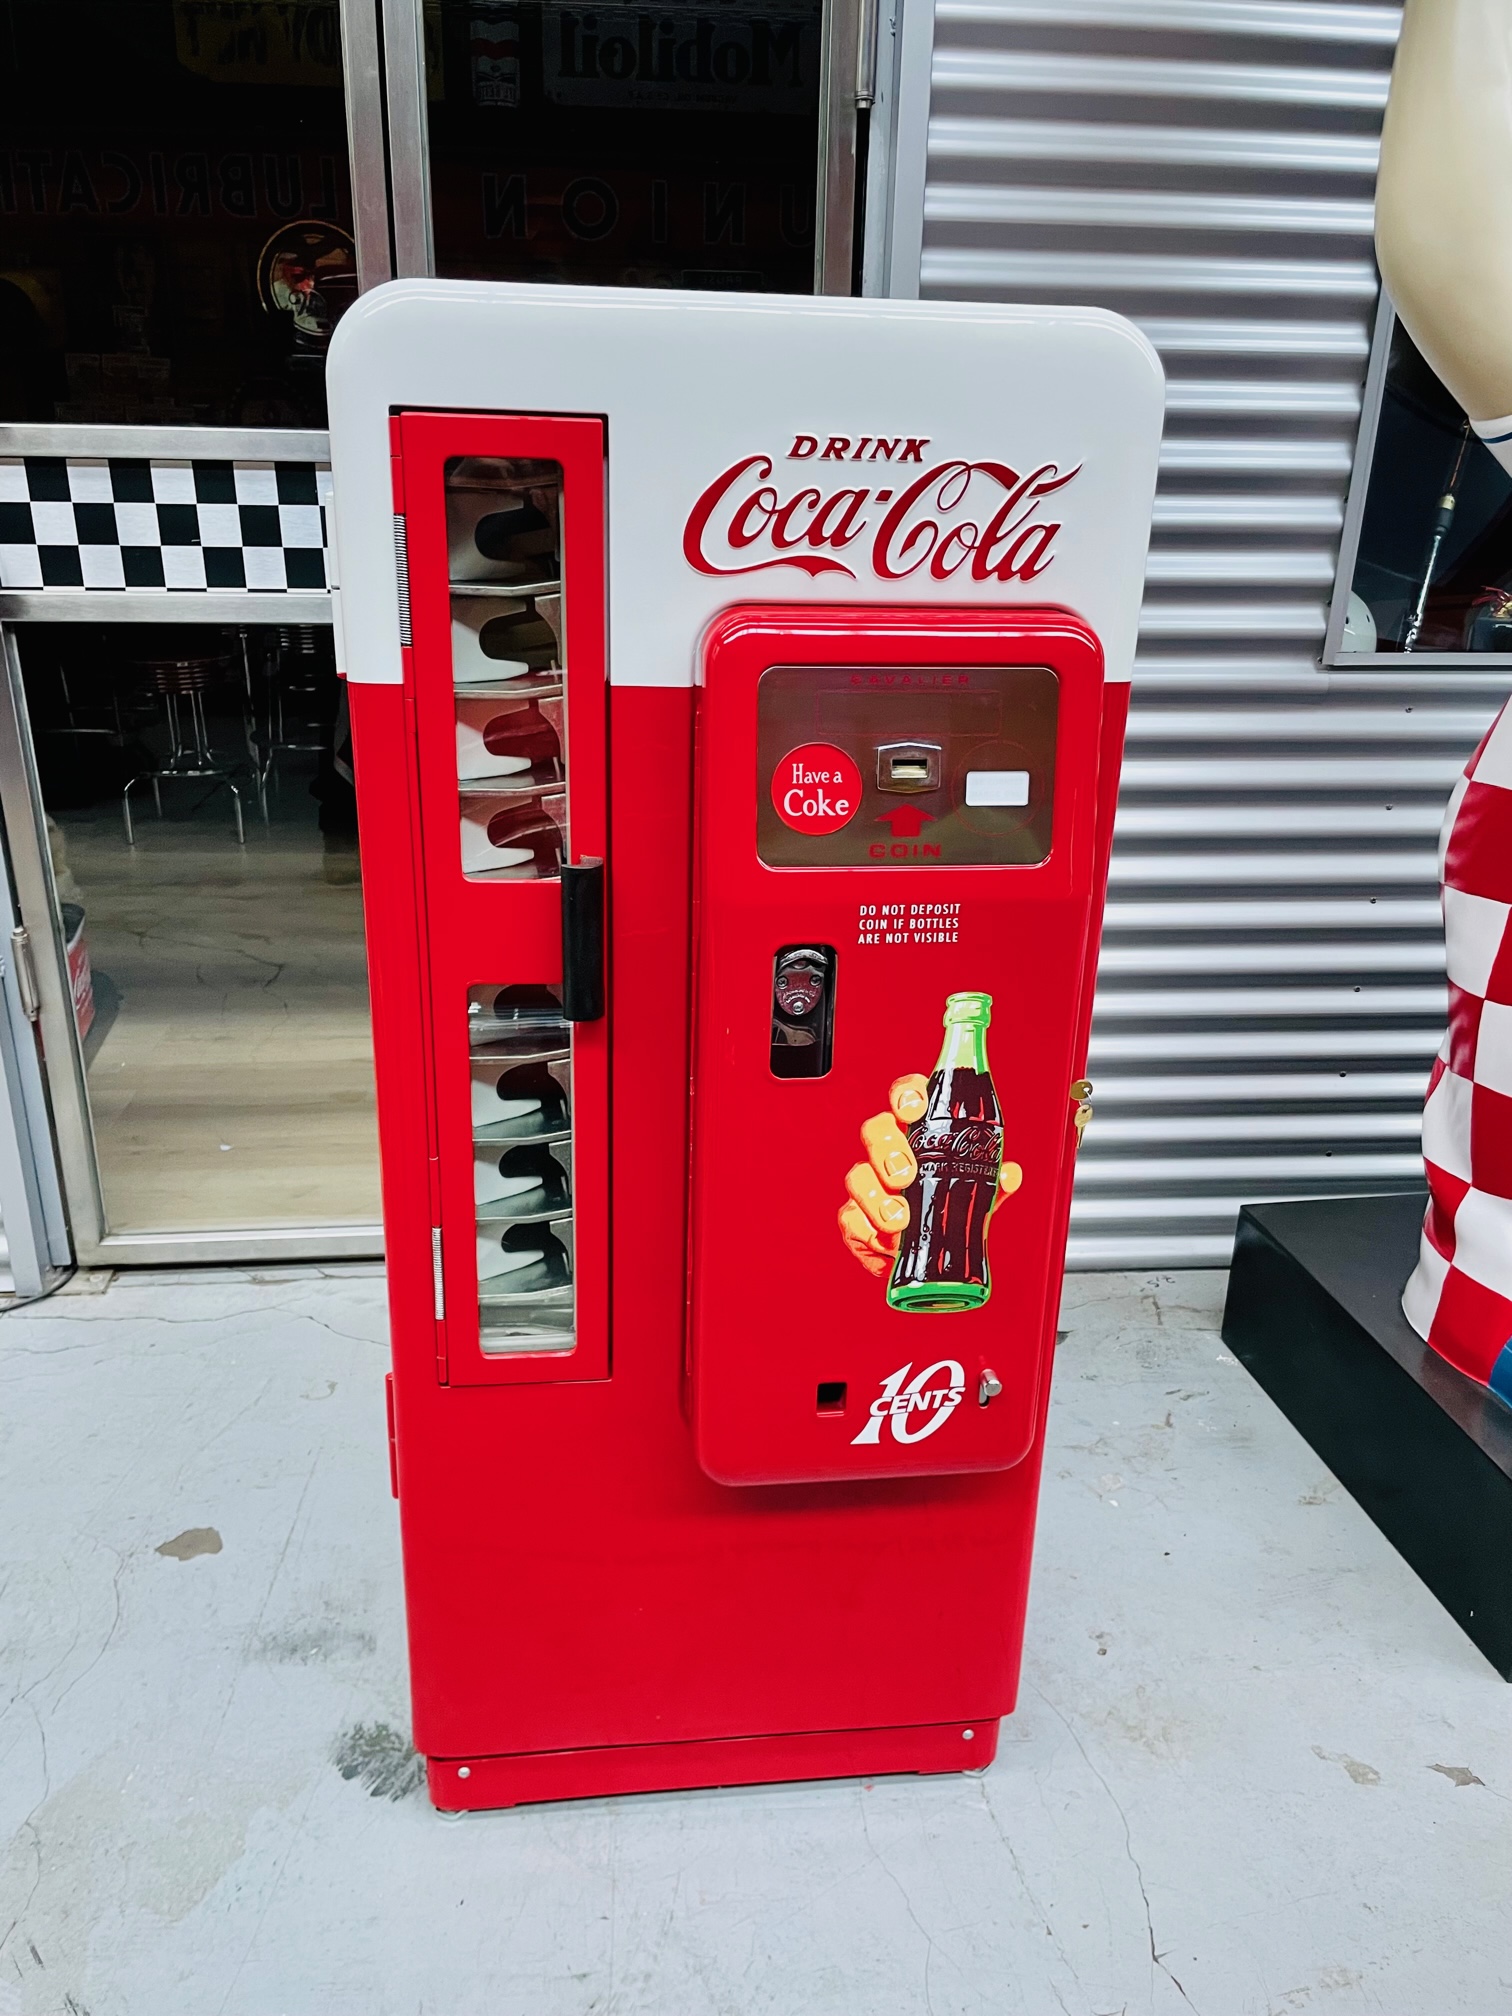 Shaker au sel et au poivre Distributeur automatique Coca Cola avec Caddy  1993 -  France